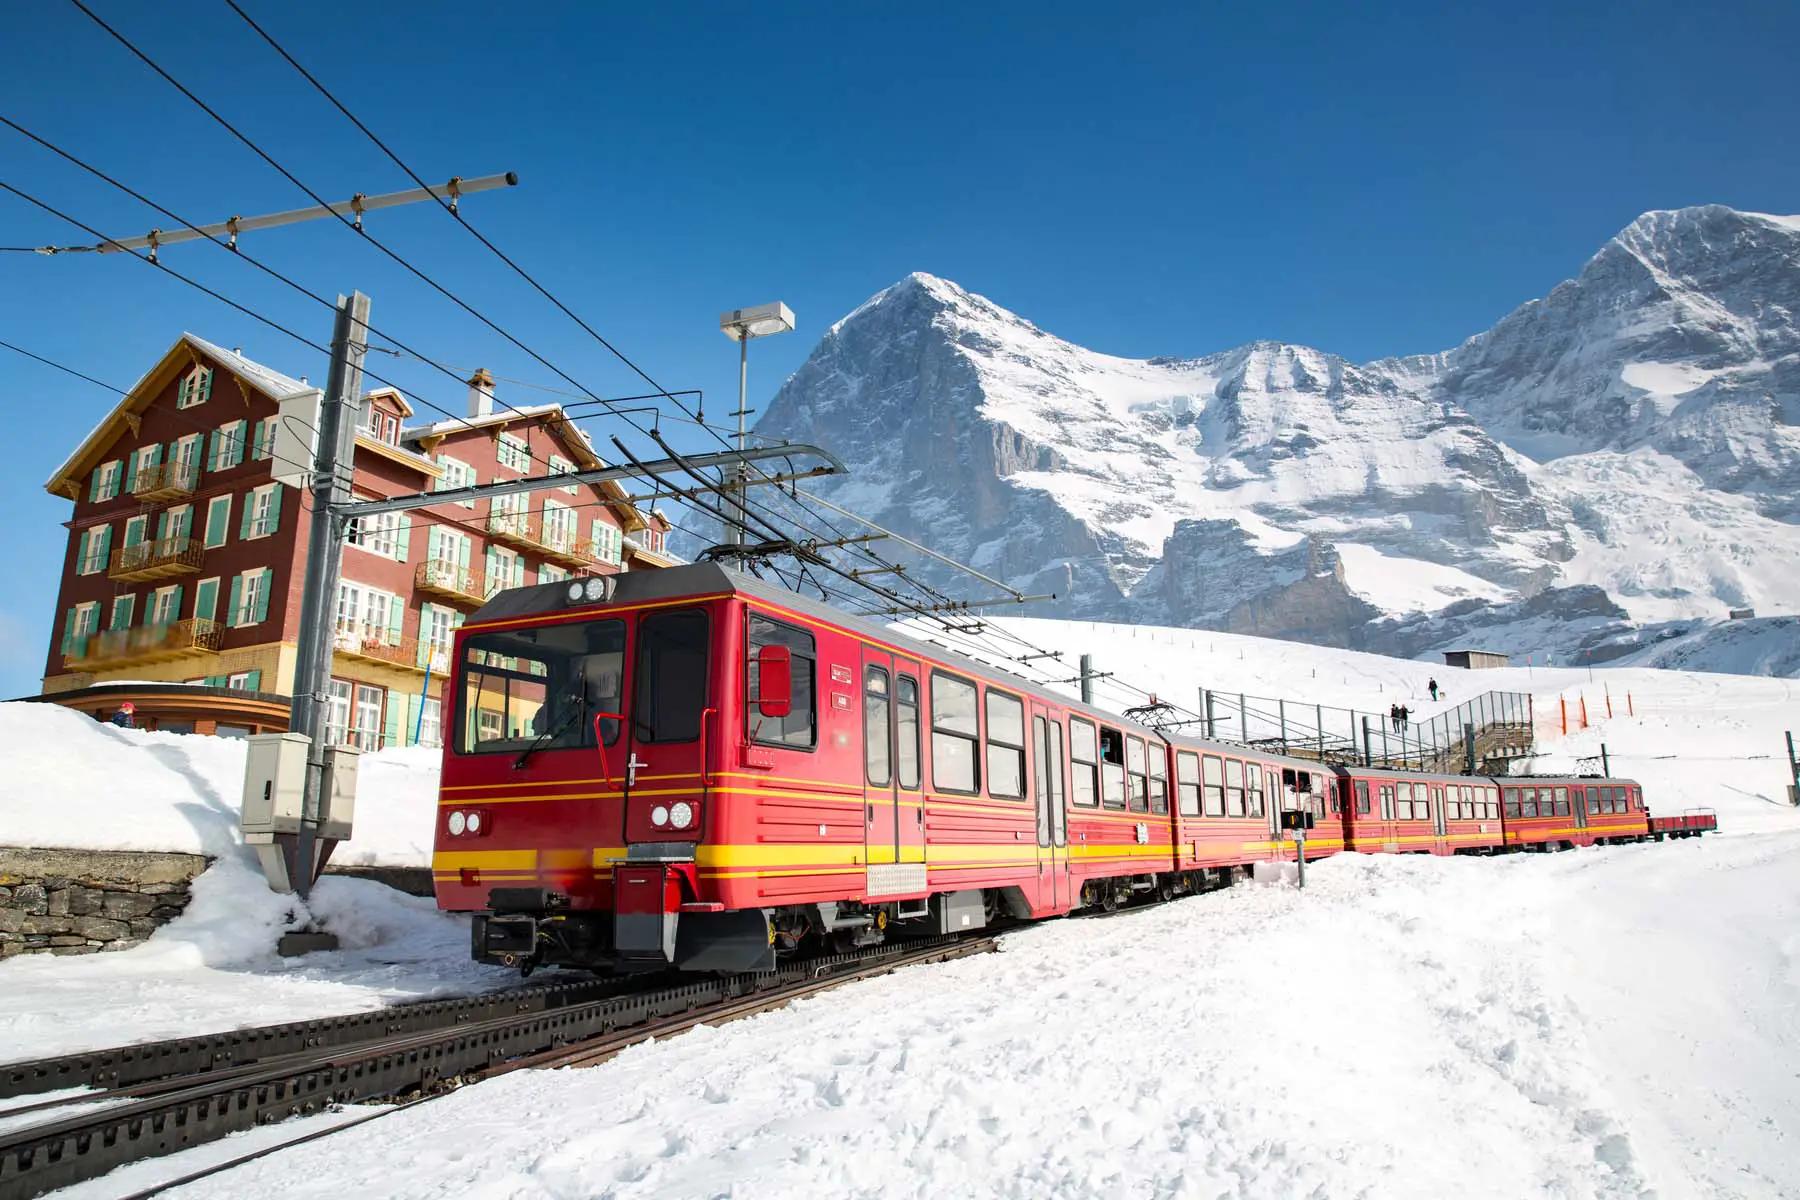 A train on Jungfraujoch